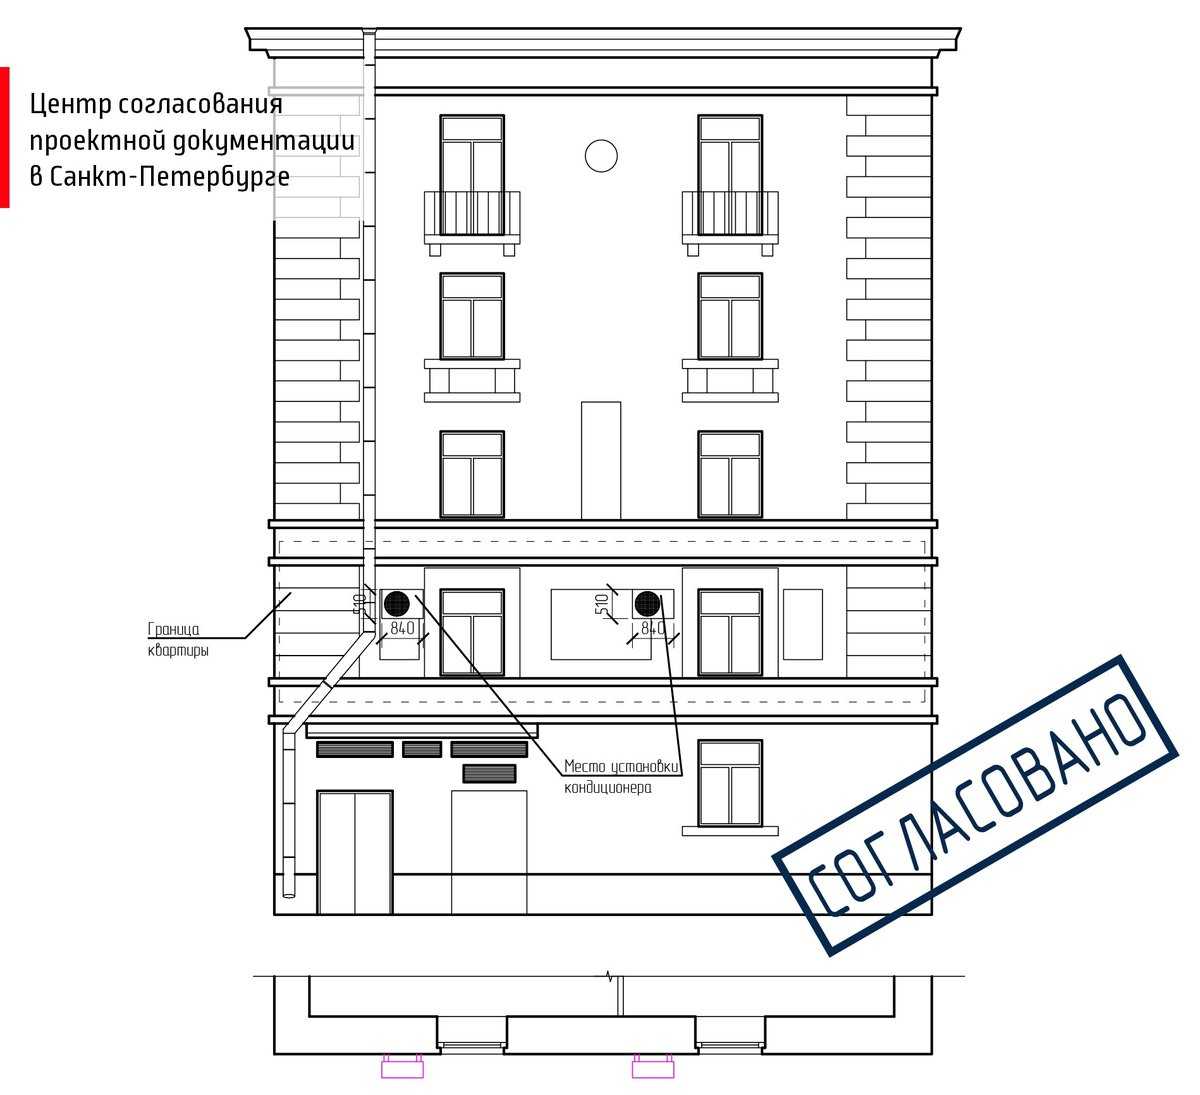 Эркер представляет часть жилого помещения, в большинстве своем застекленную, который выступает из фасада дома, и использующийся для увеличения площади квартиры.